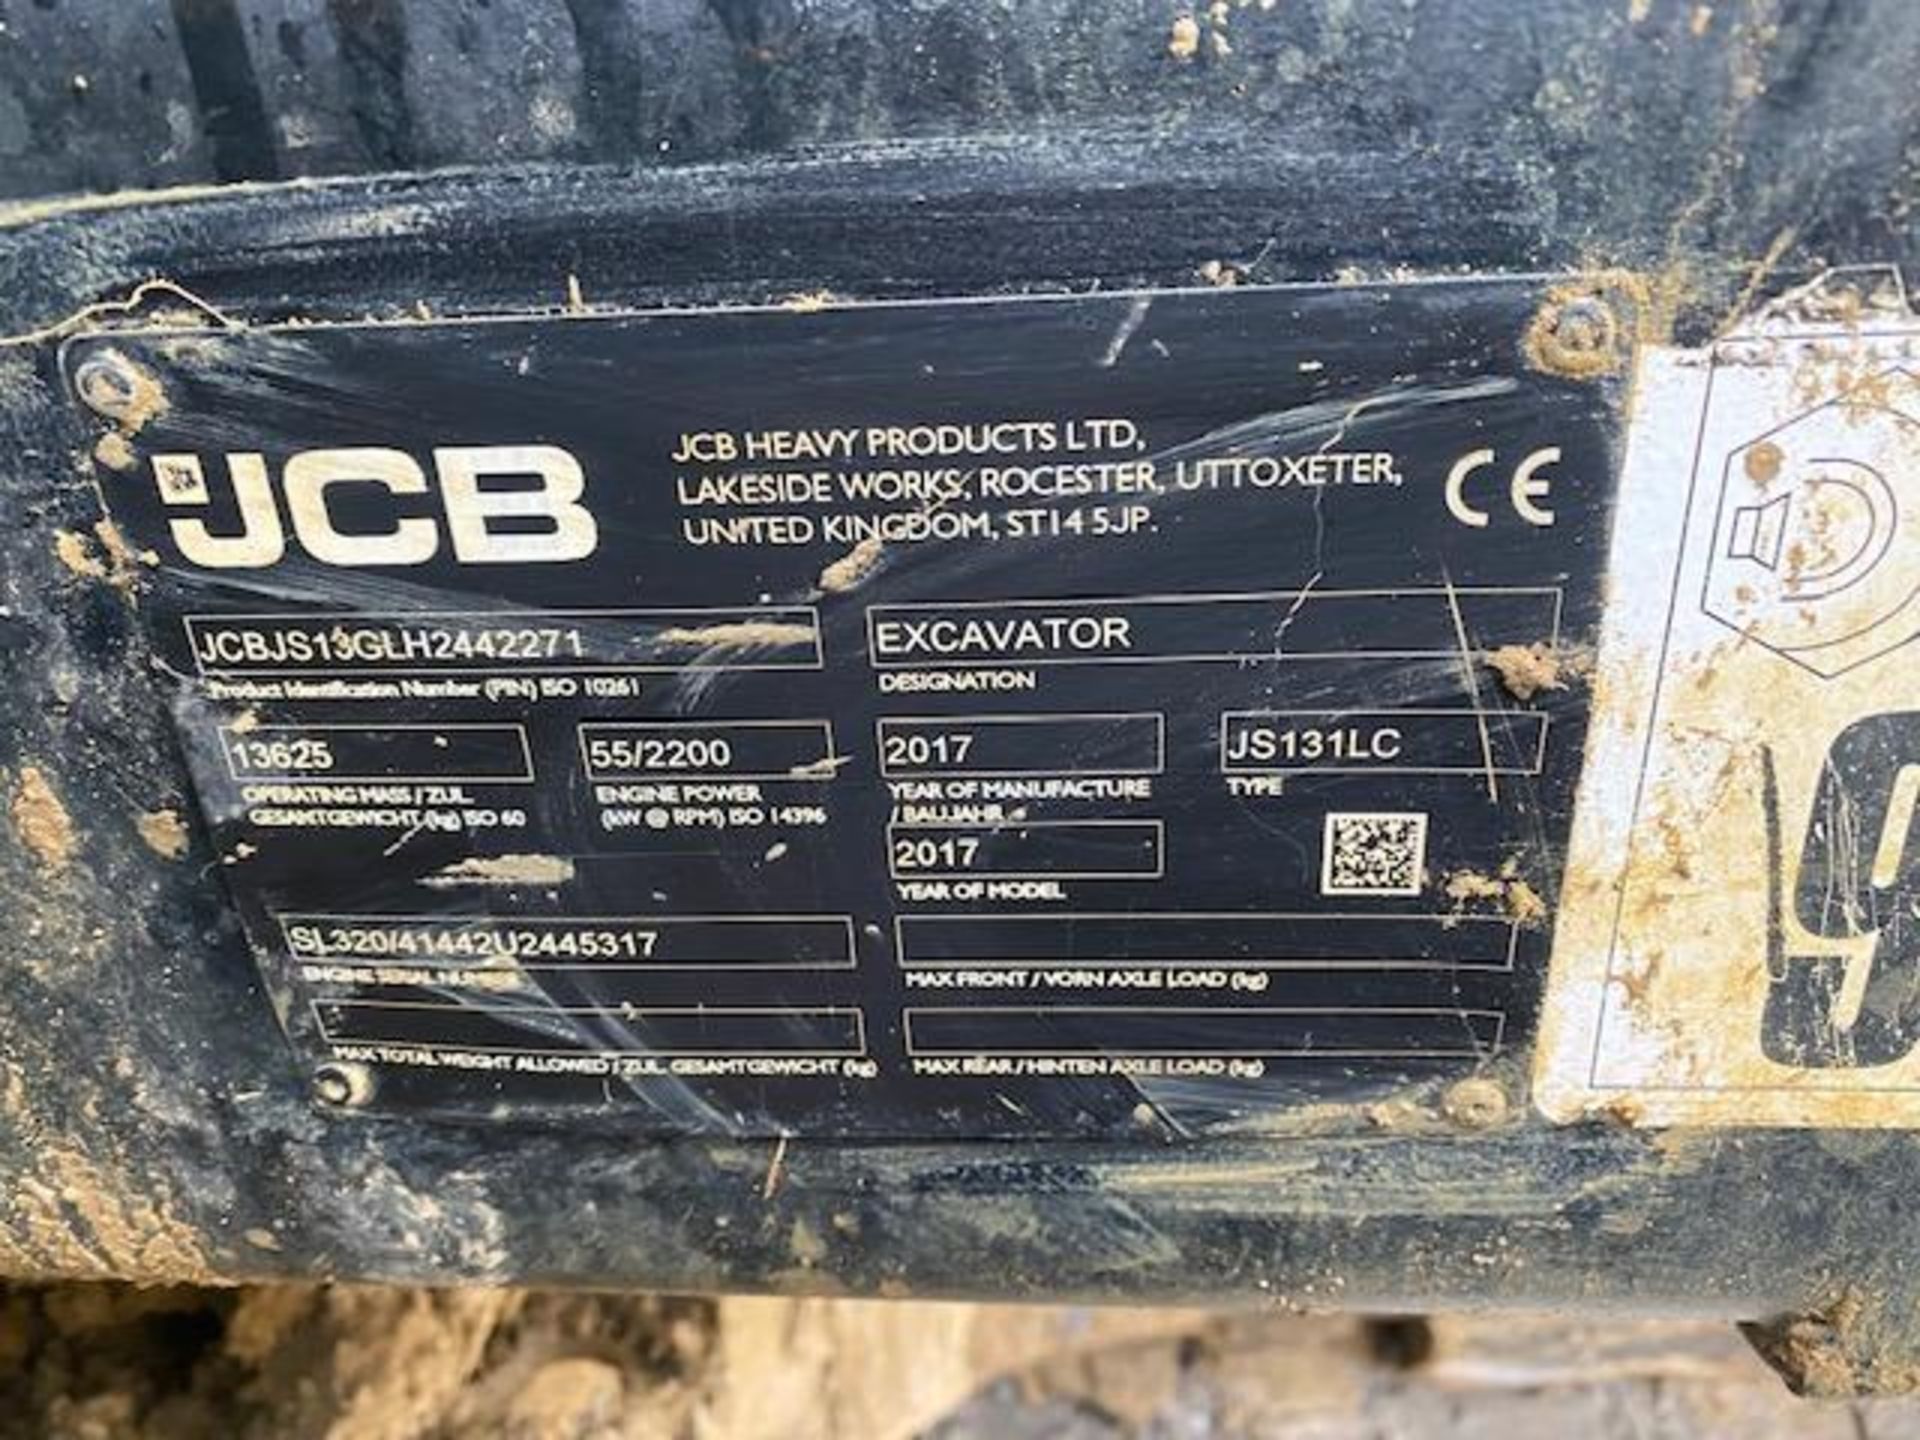 JCB JS131 13 ton excavator (E21) (2017) - Image 8 of 14